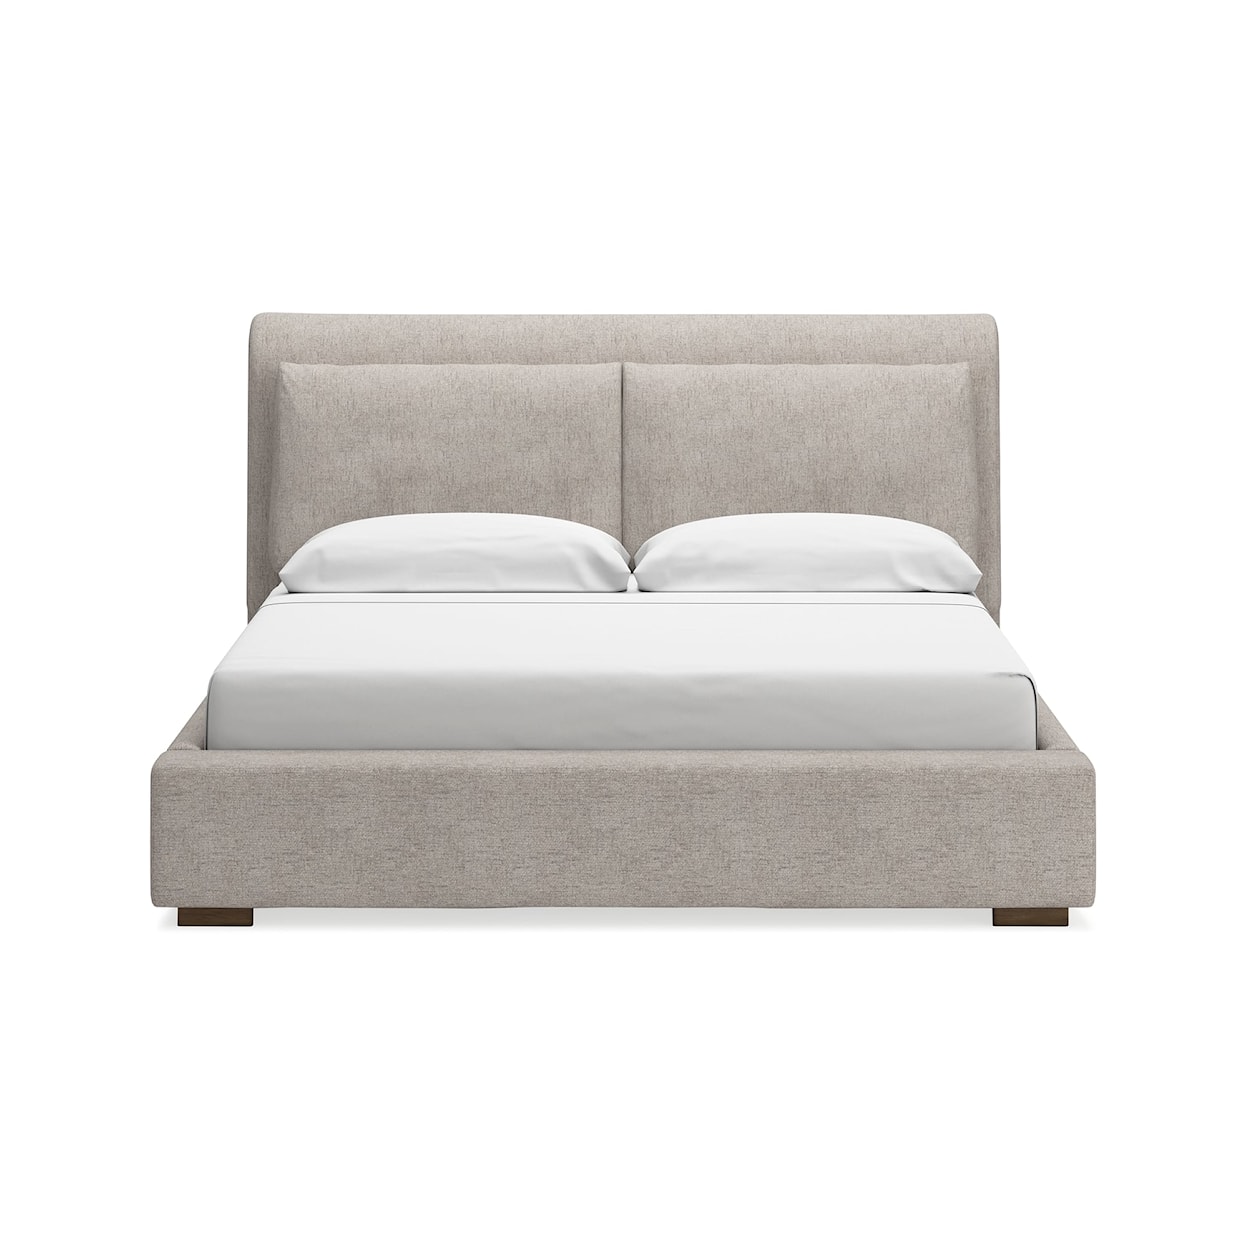 Ashley Furniture Signature Design Cabalynn King Upholstered Bed